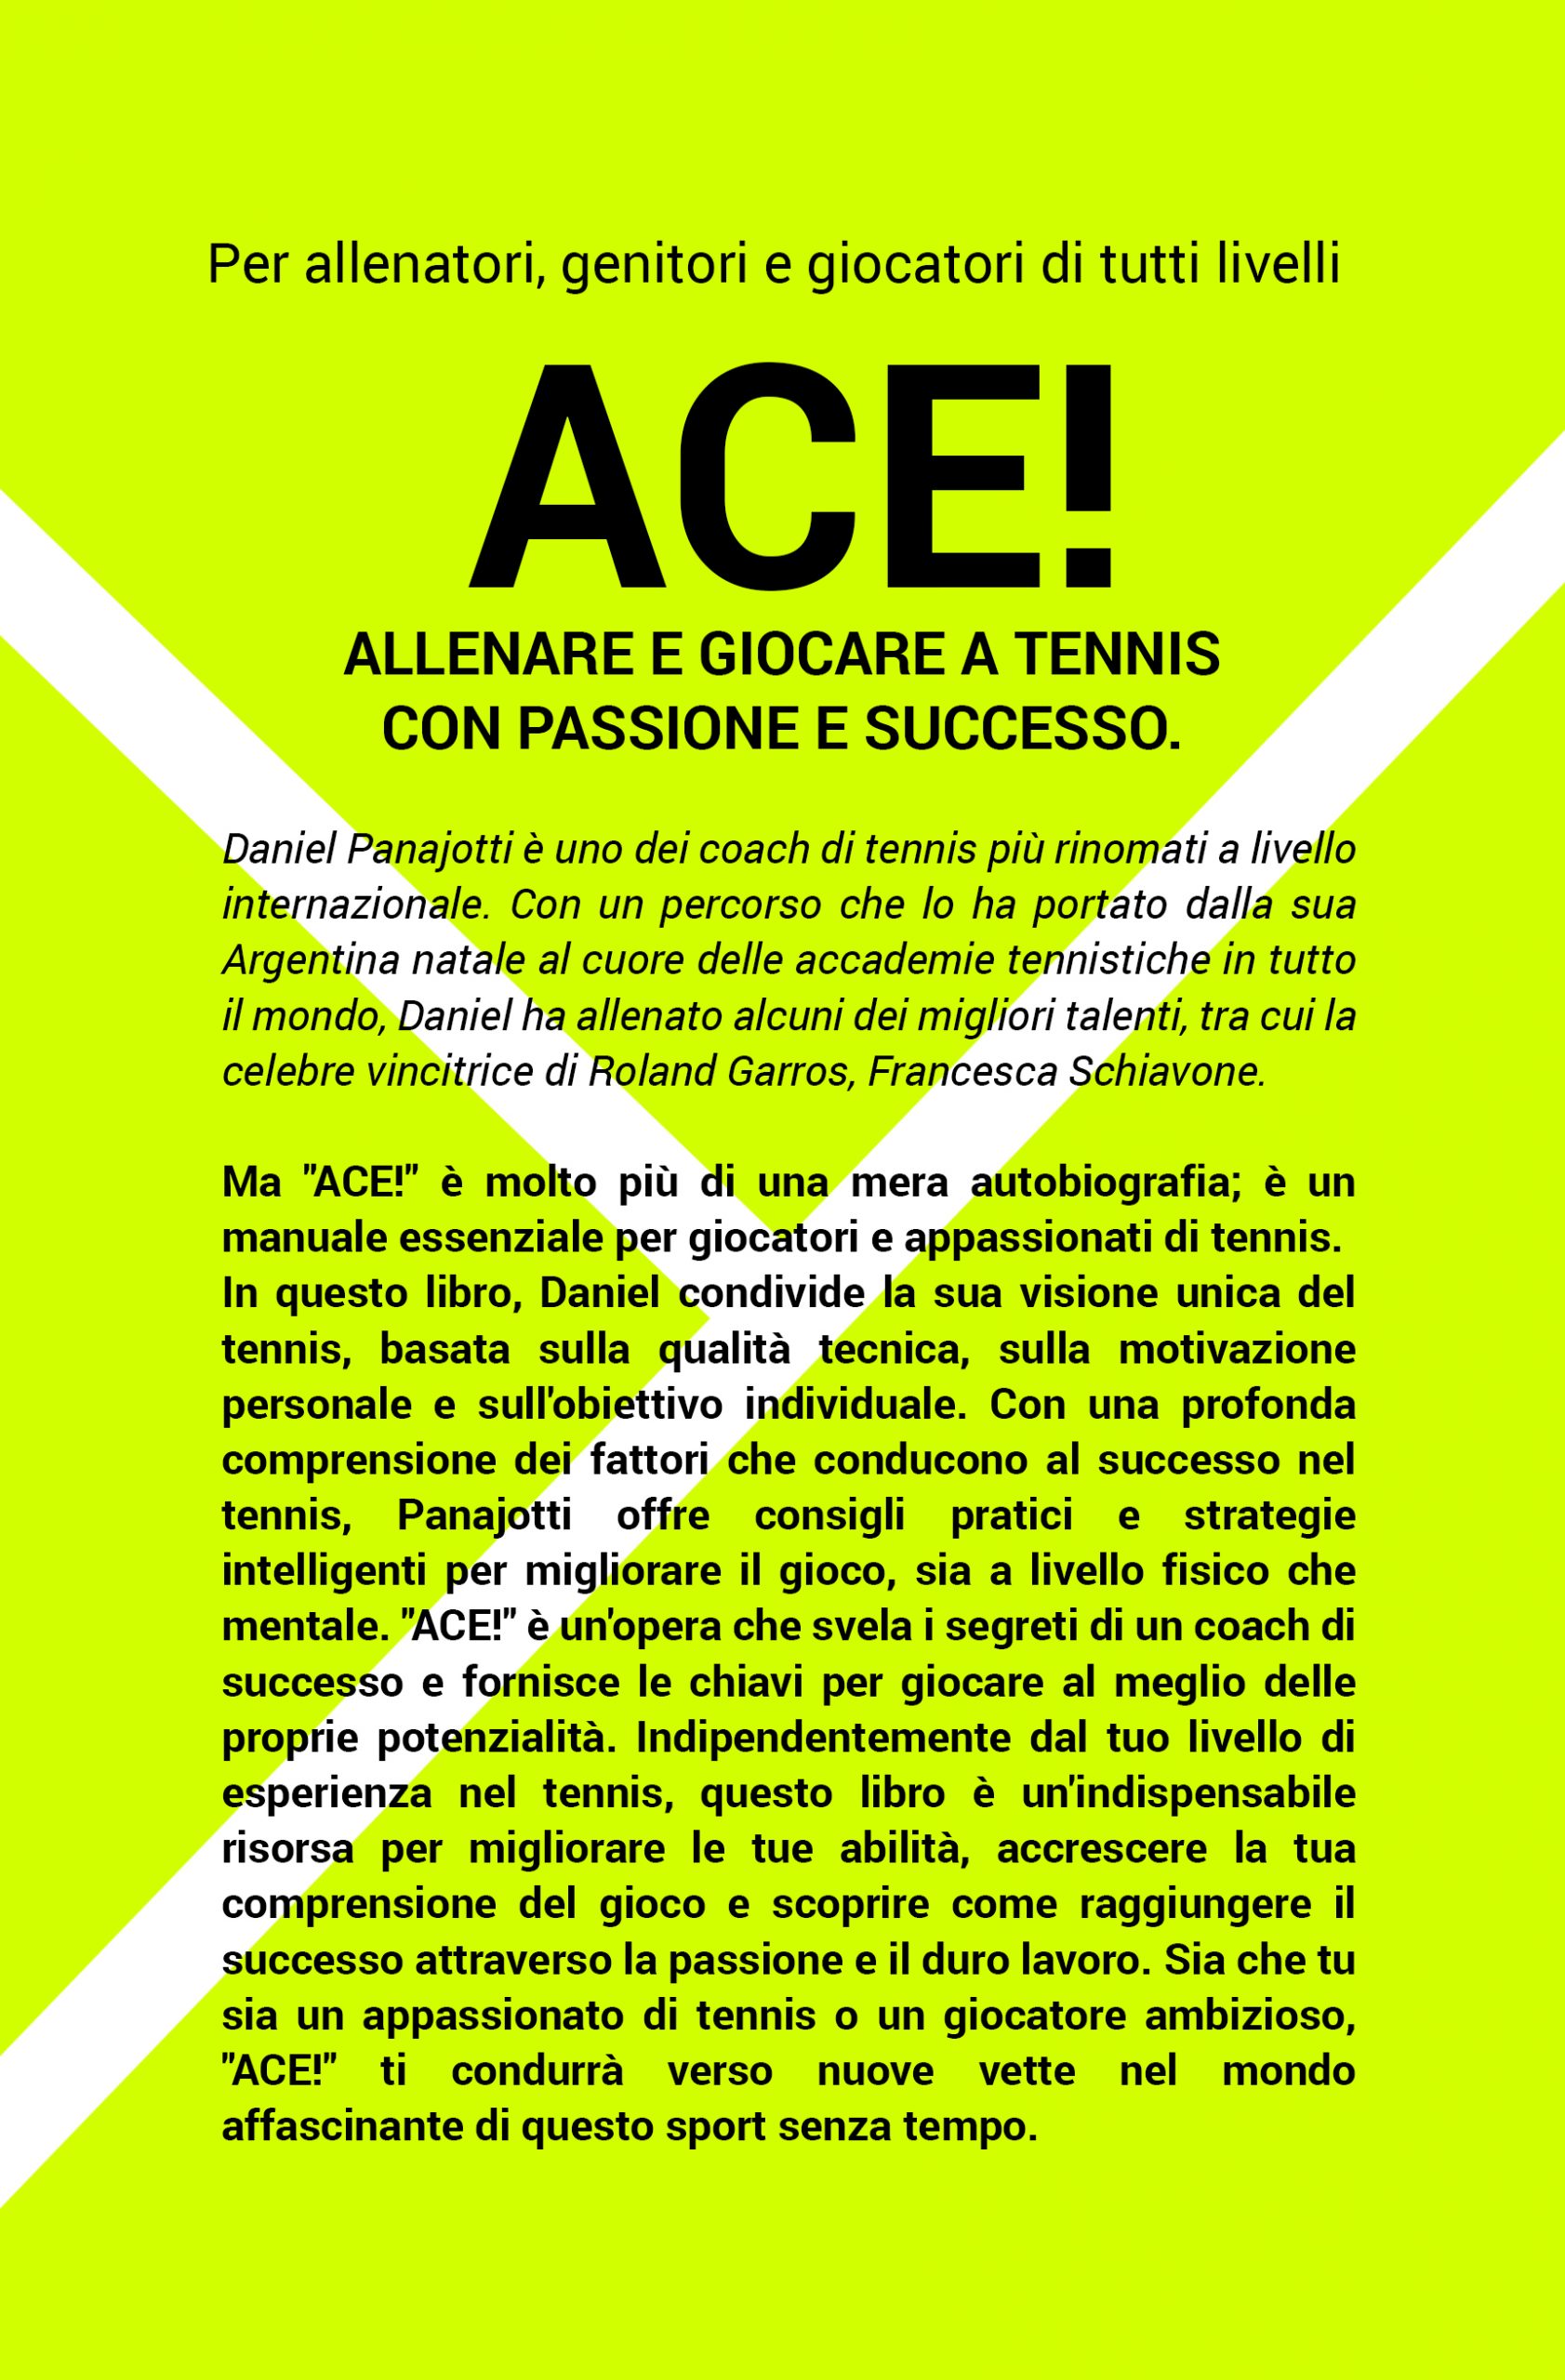 ACE! Allenare e giocare attennis con passione e successo